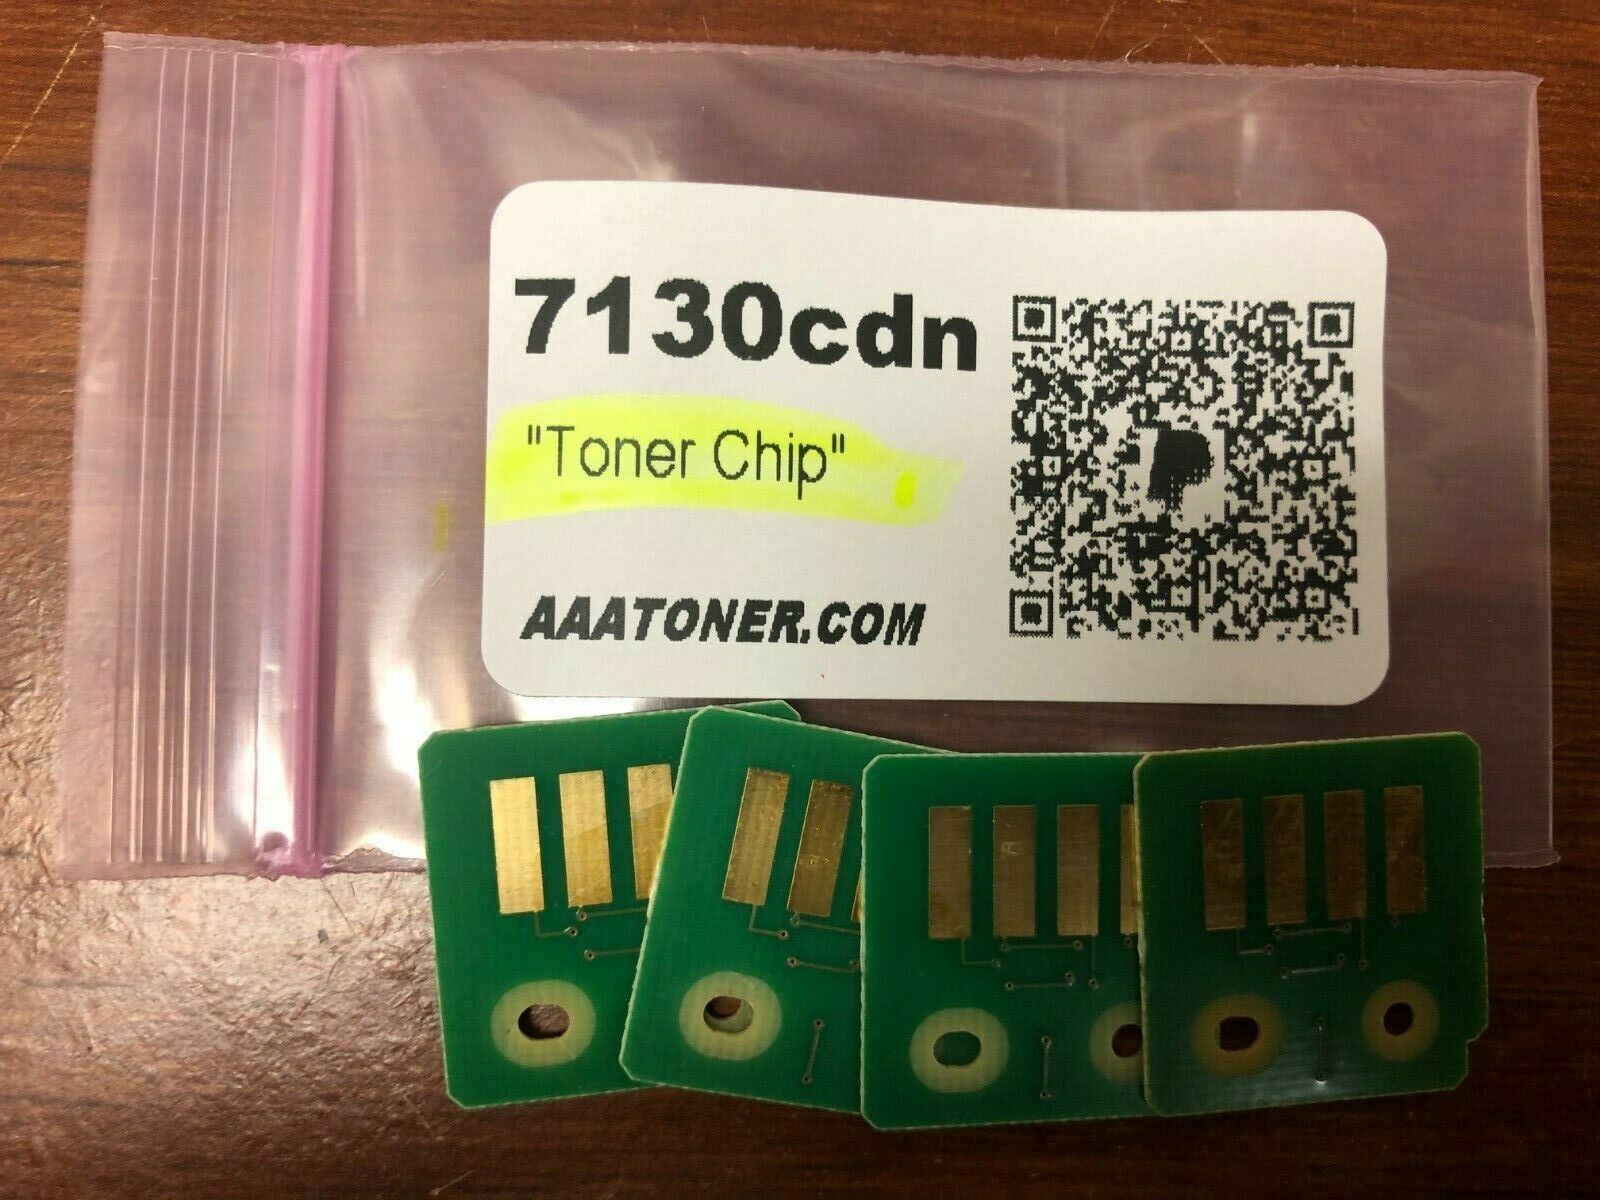 4 x Toner Reset Chip (BCMY) for Dell 7130cdn, 7130cdn Color Laser Printer Refill